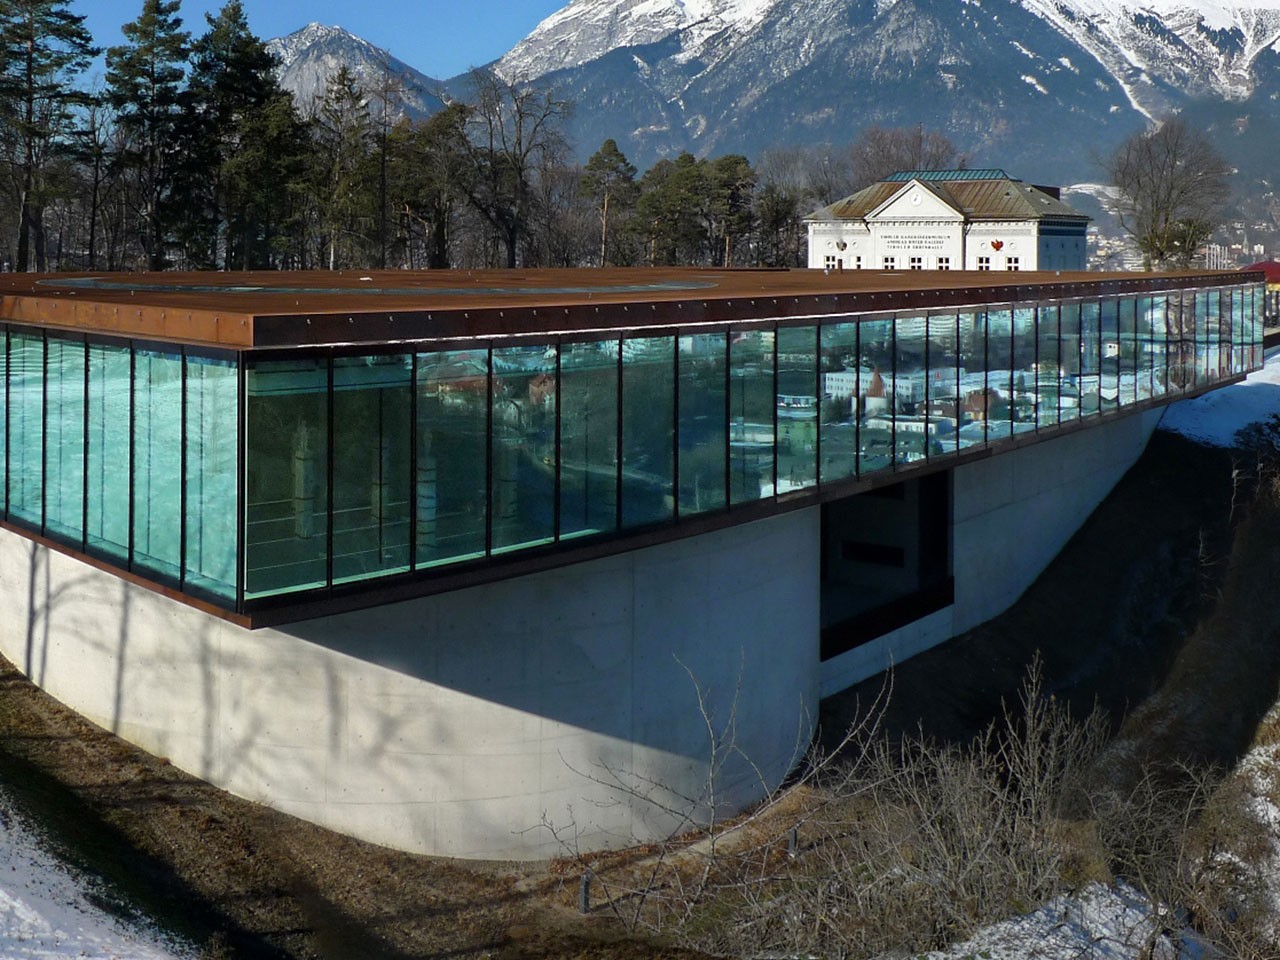 Türkisfarbener Fassadenbau aus Glas vor Berghintergrund in Tirol